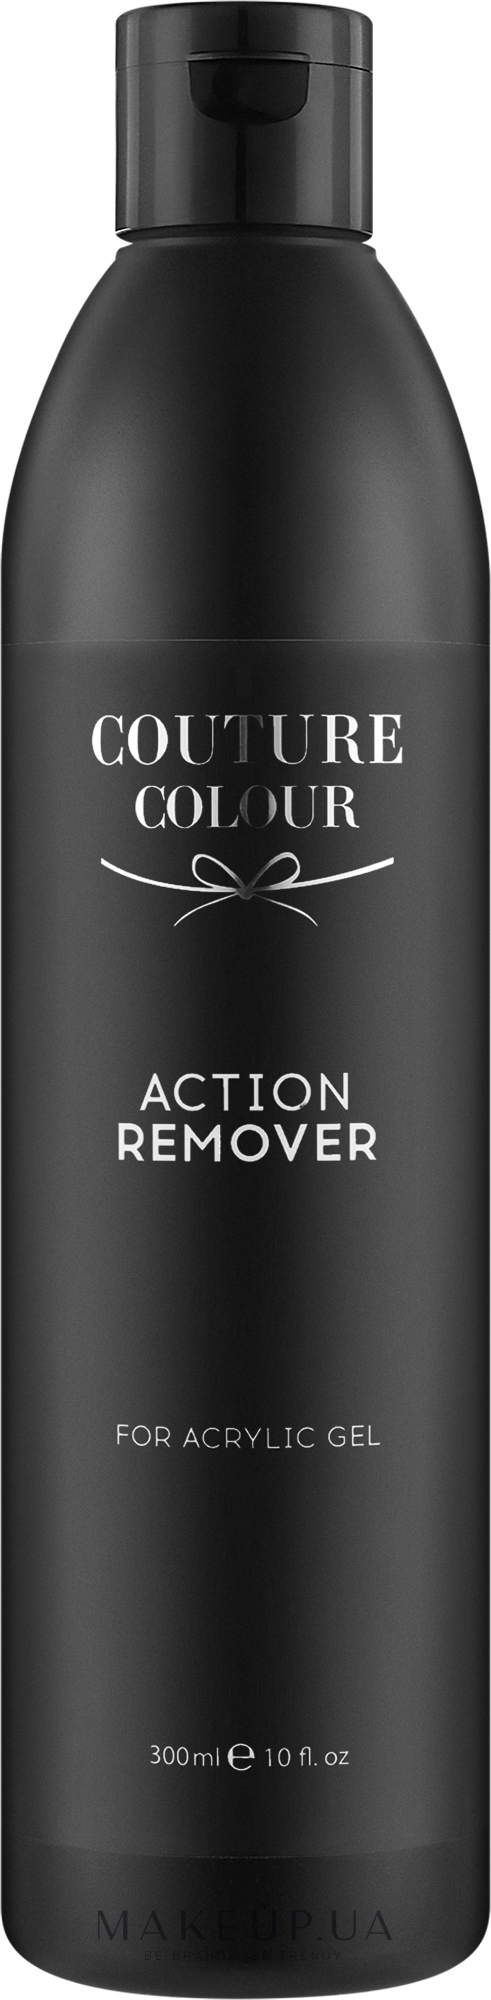 Средство для удаления акрил-геля - Couture Colour Action Remover for Acrylic Gel — фото 300ml